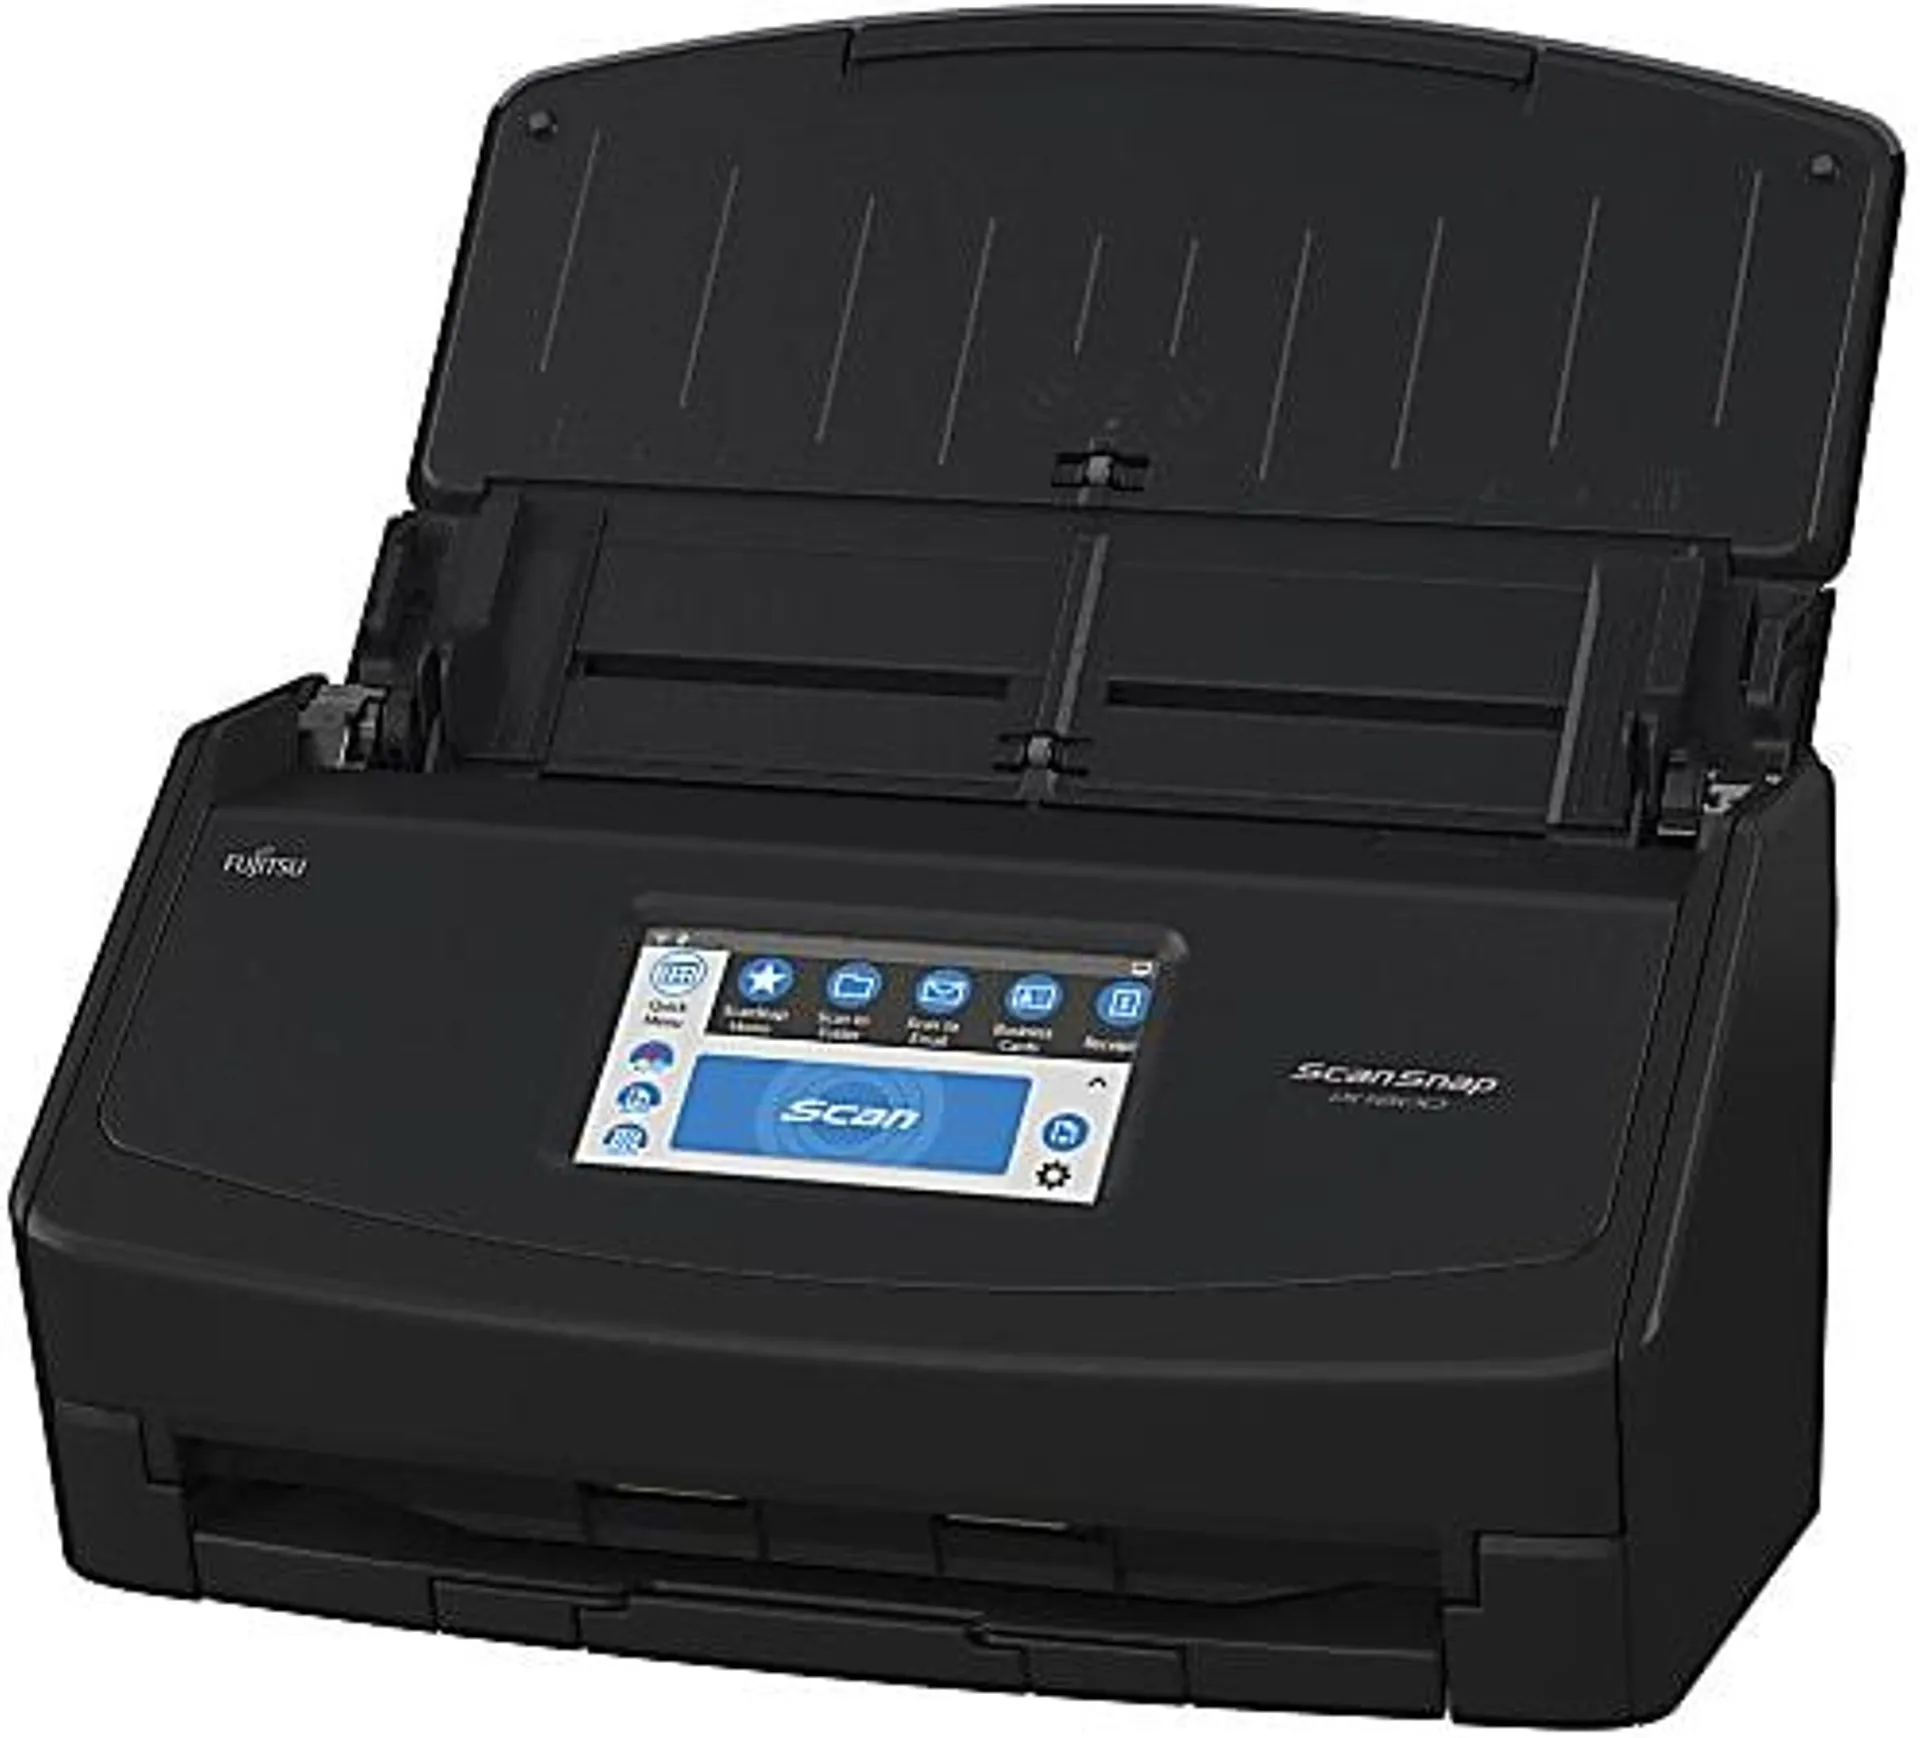 Fujitsu ScanSnap iX1600 Large Format ADF Scanner, Black